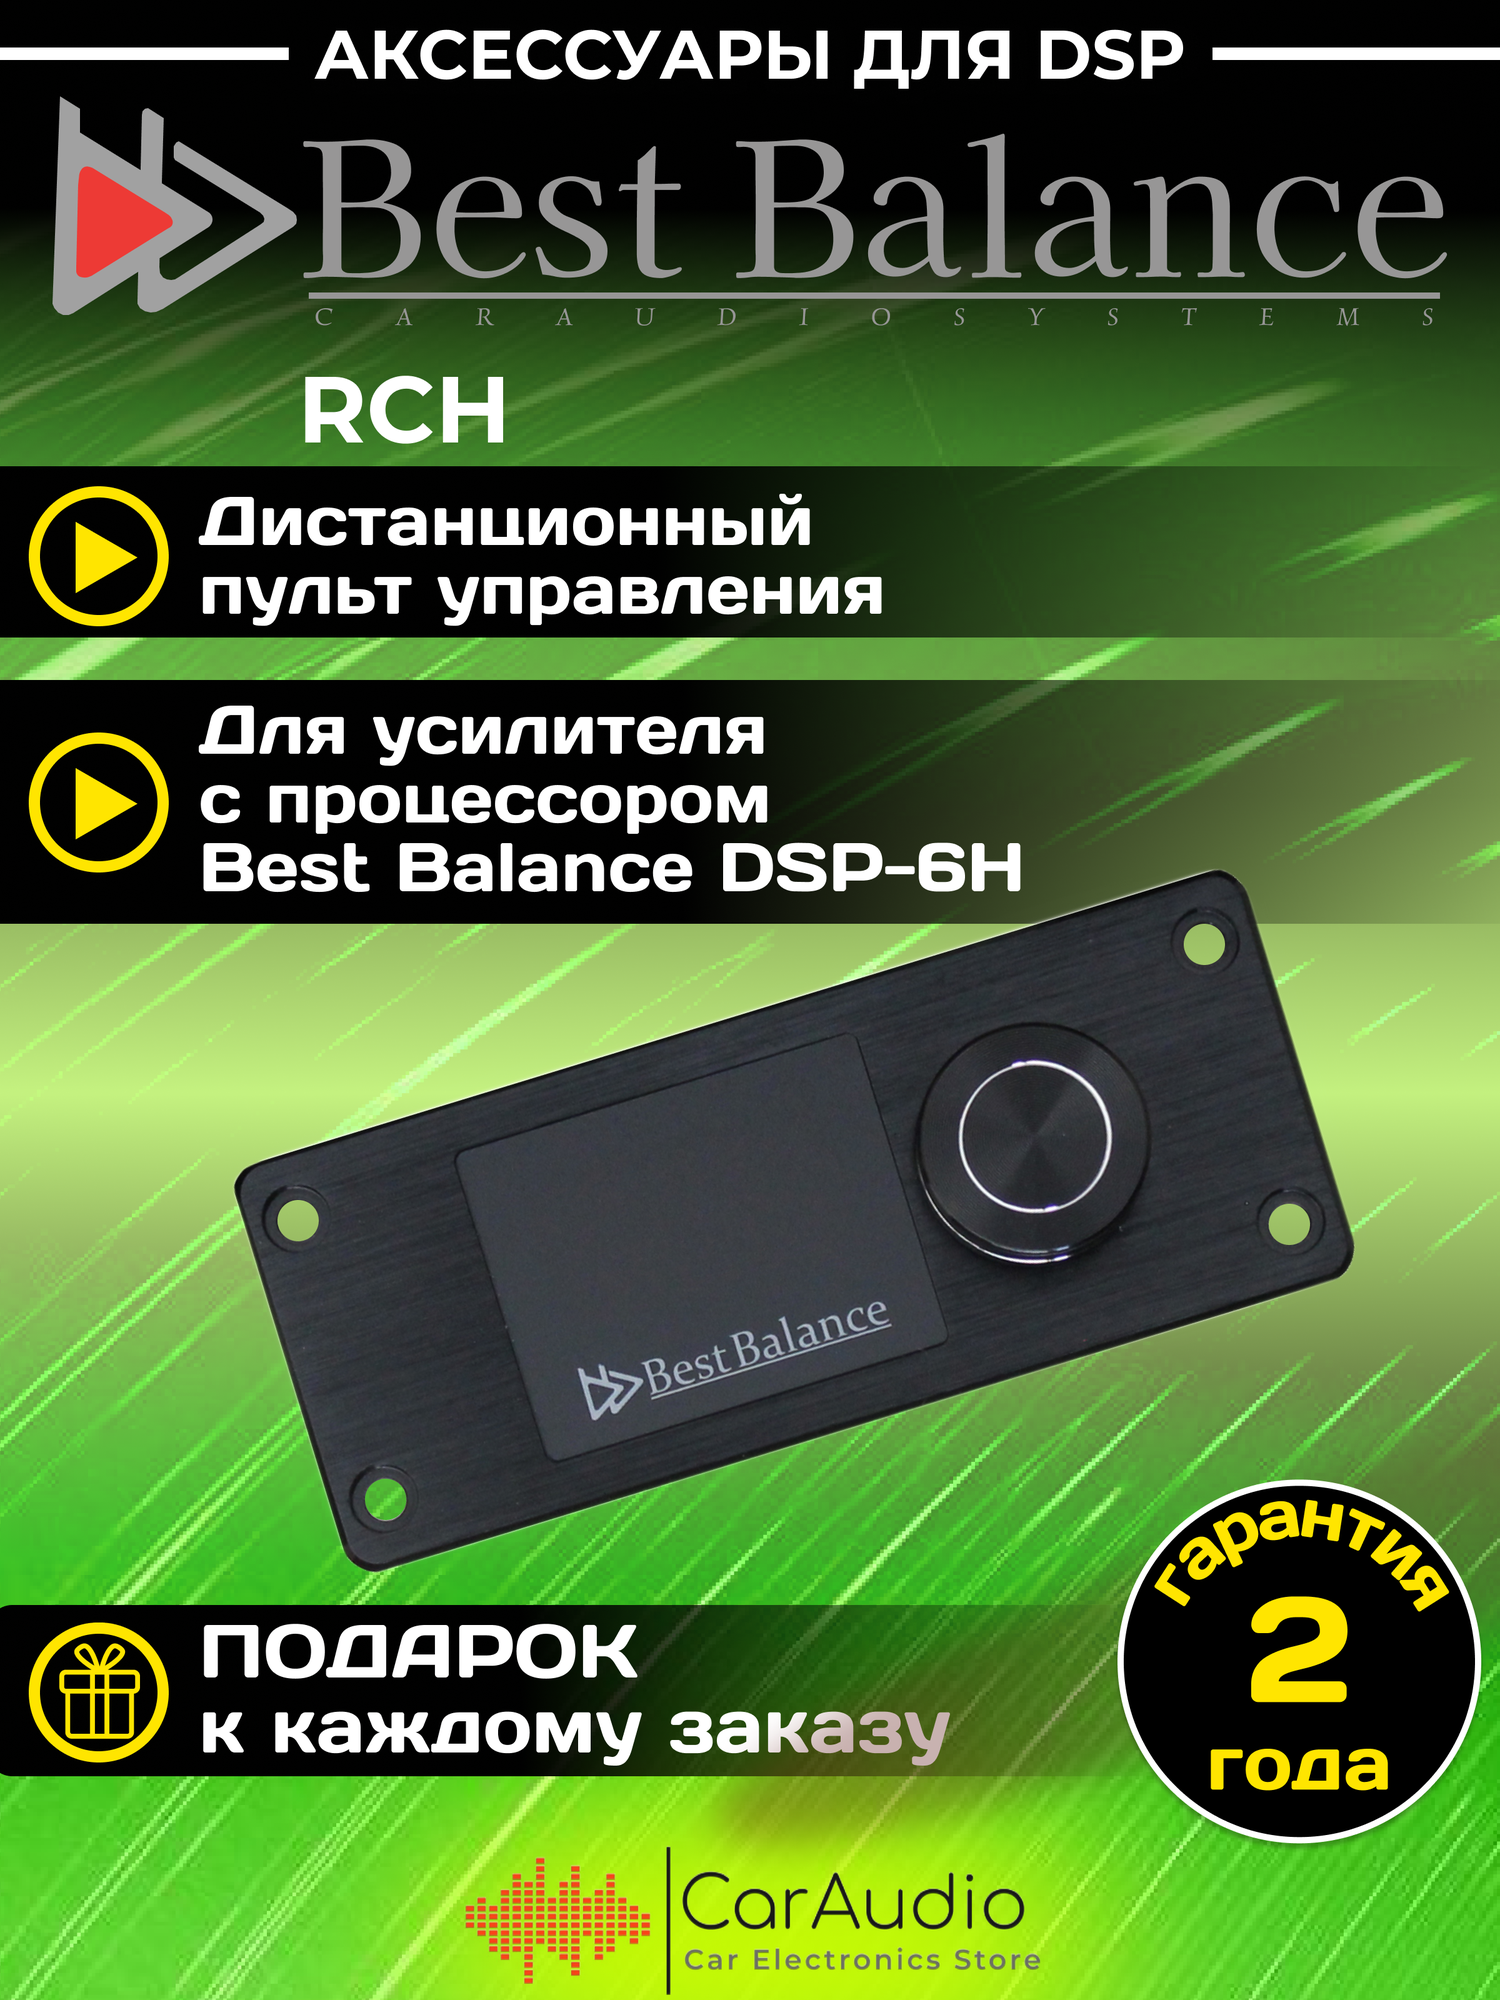 Дистанционный пульт управления Best Balance RCH для управления процессором Best Balance DSP-6H